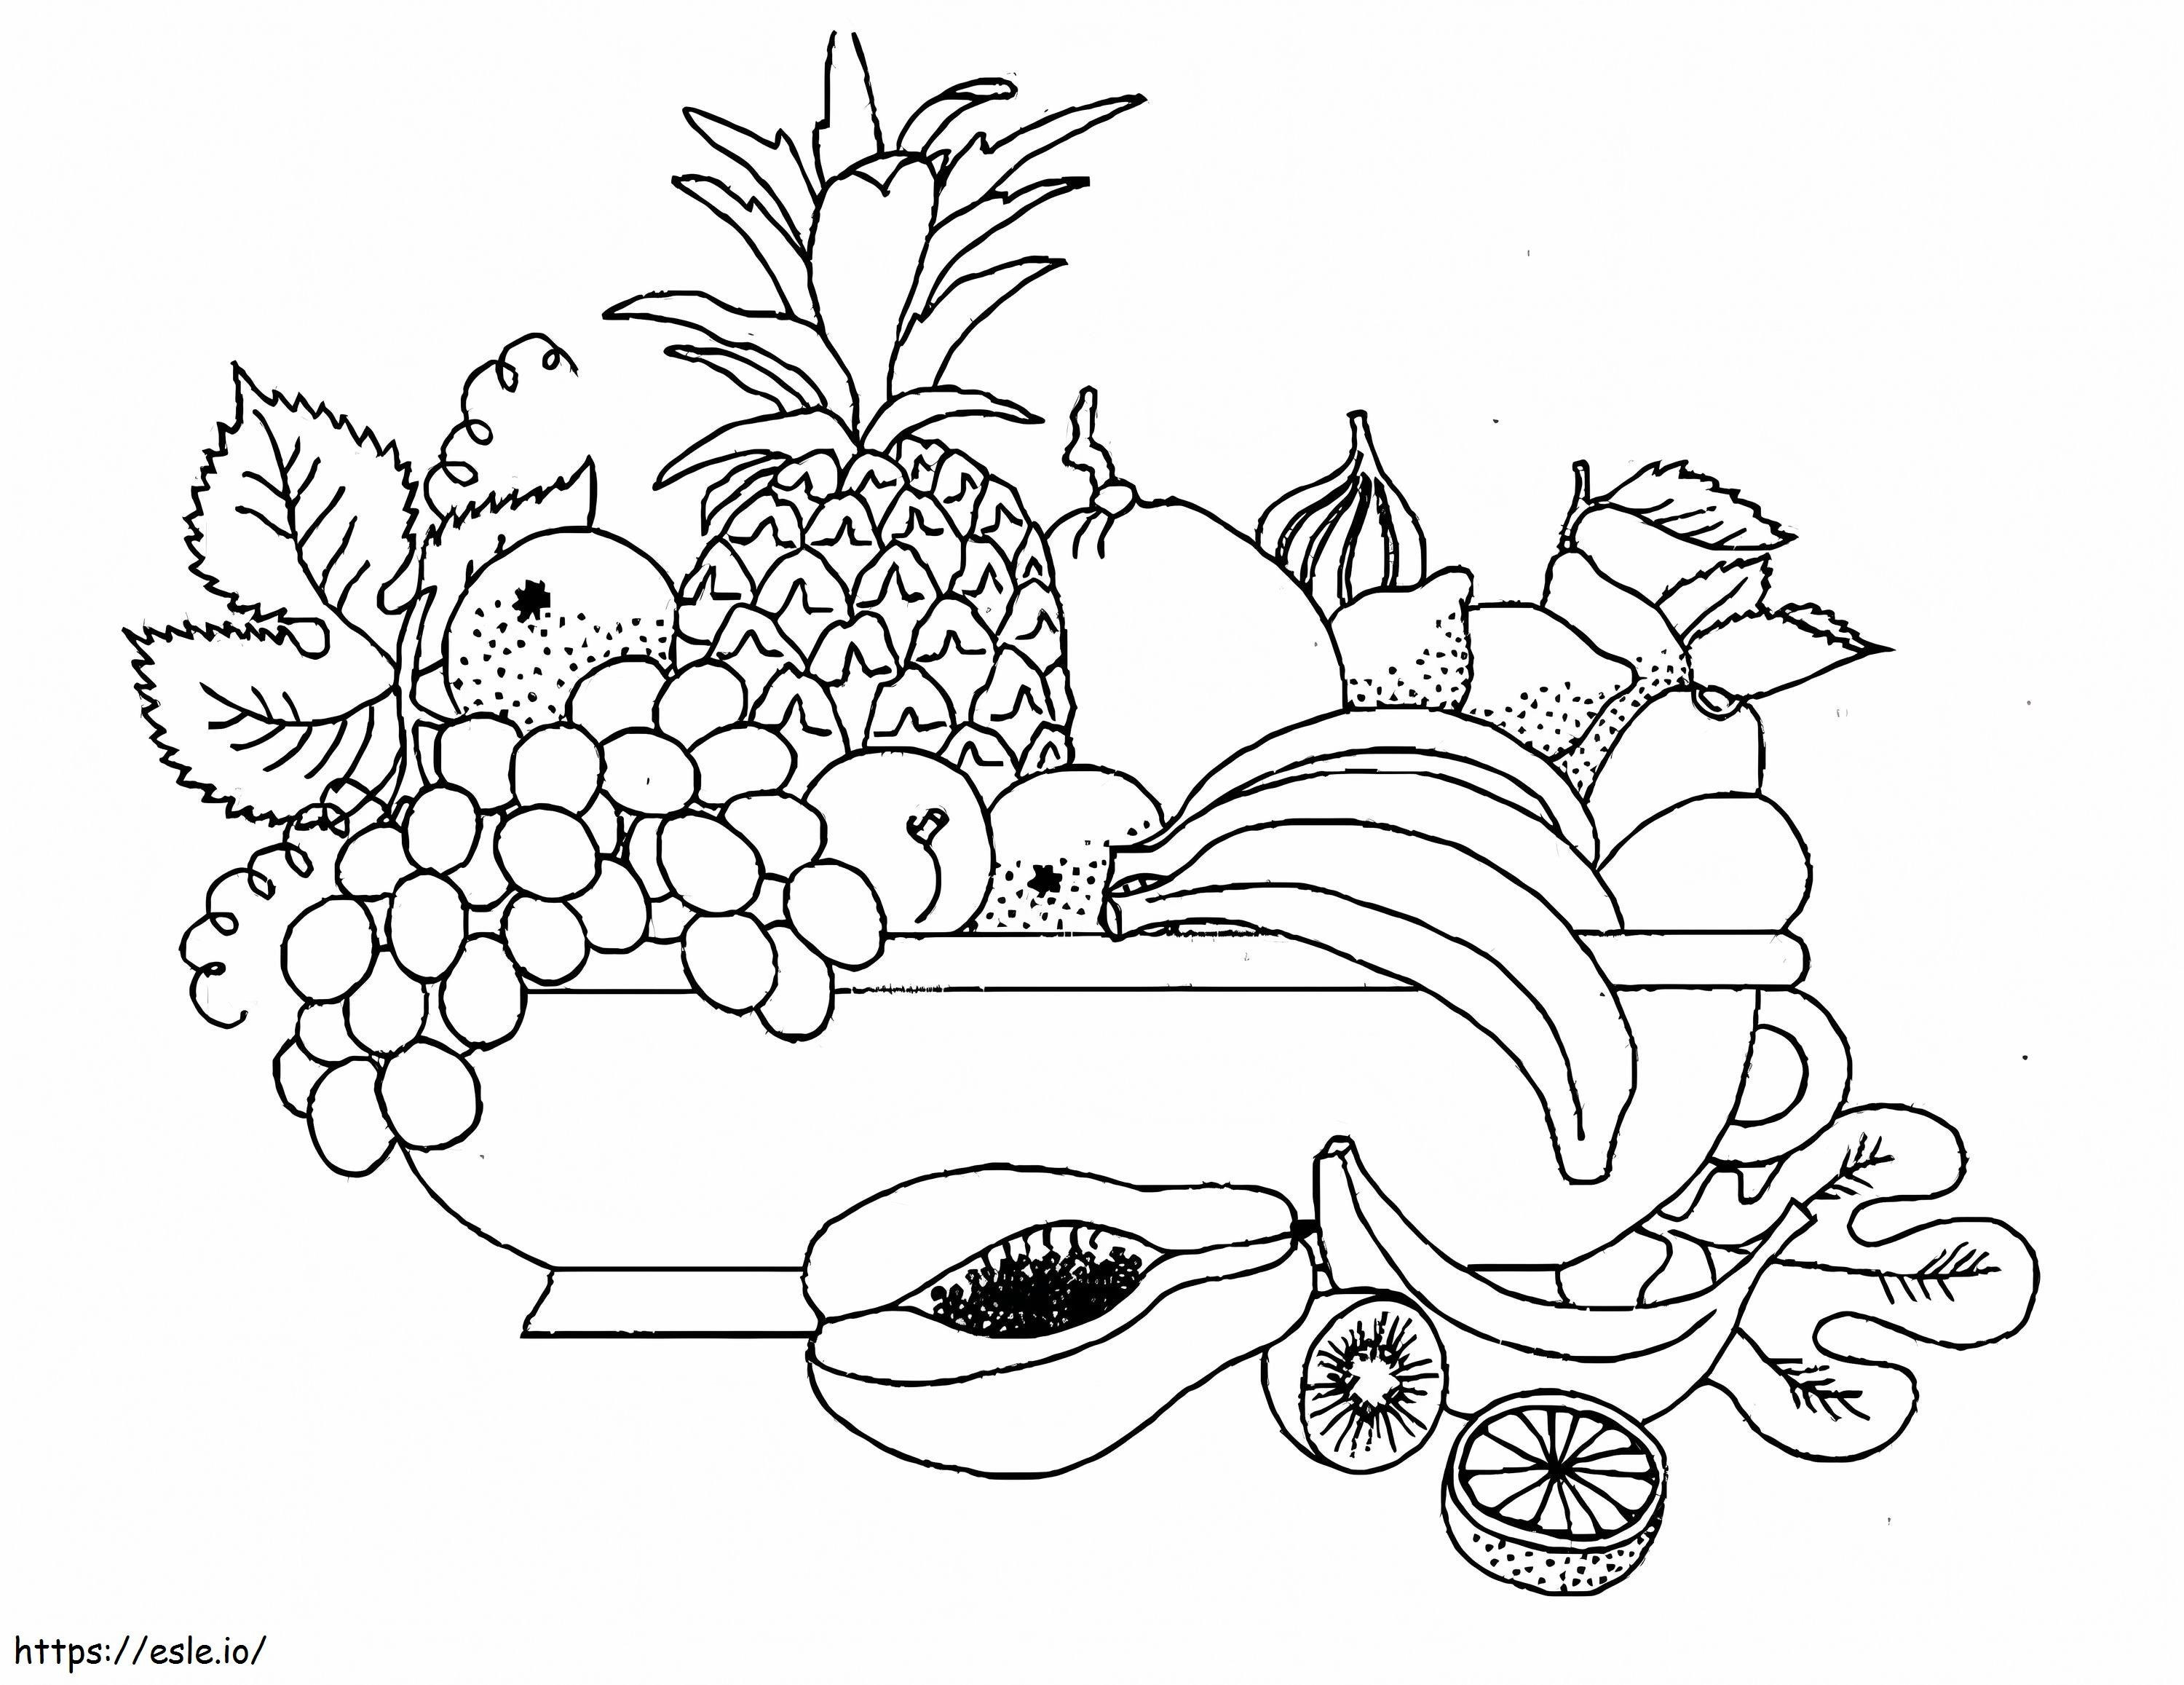 Üzüm ve Meyveler boyama